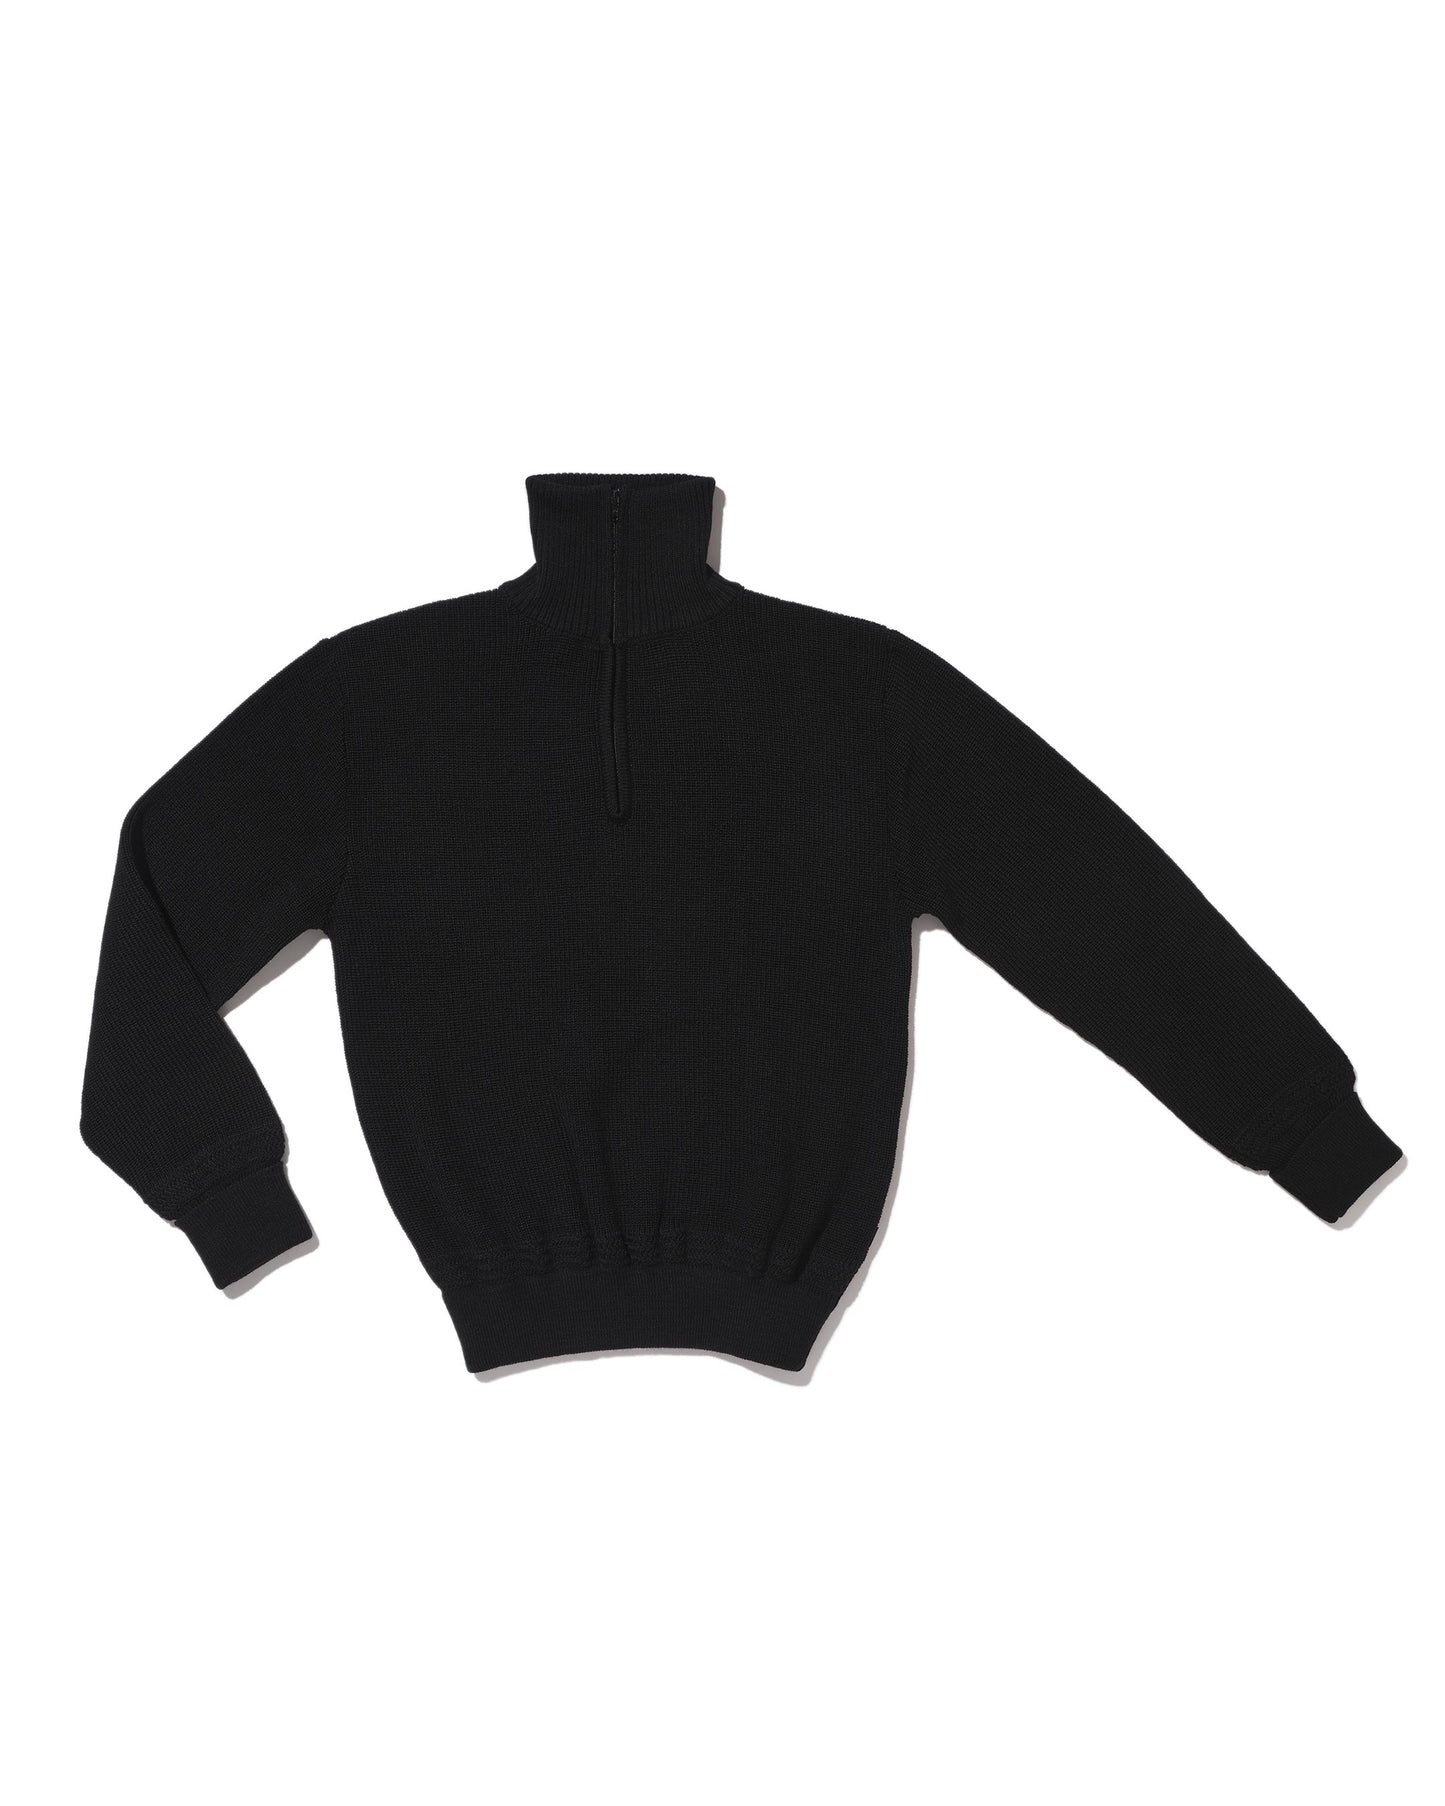 Black 80% wool trucker sweater